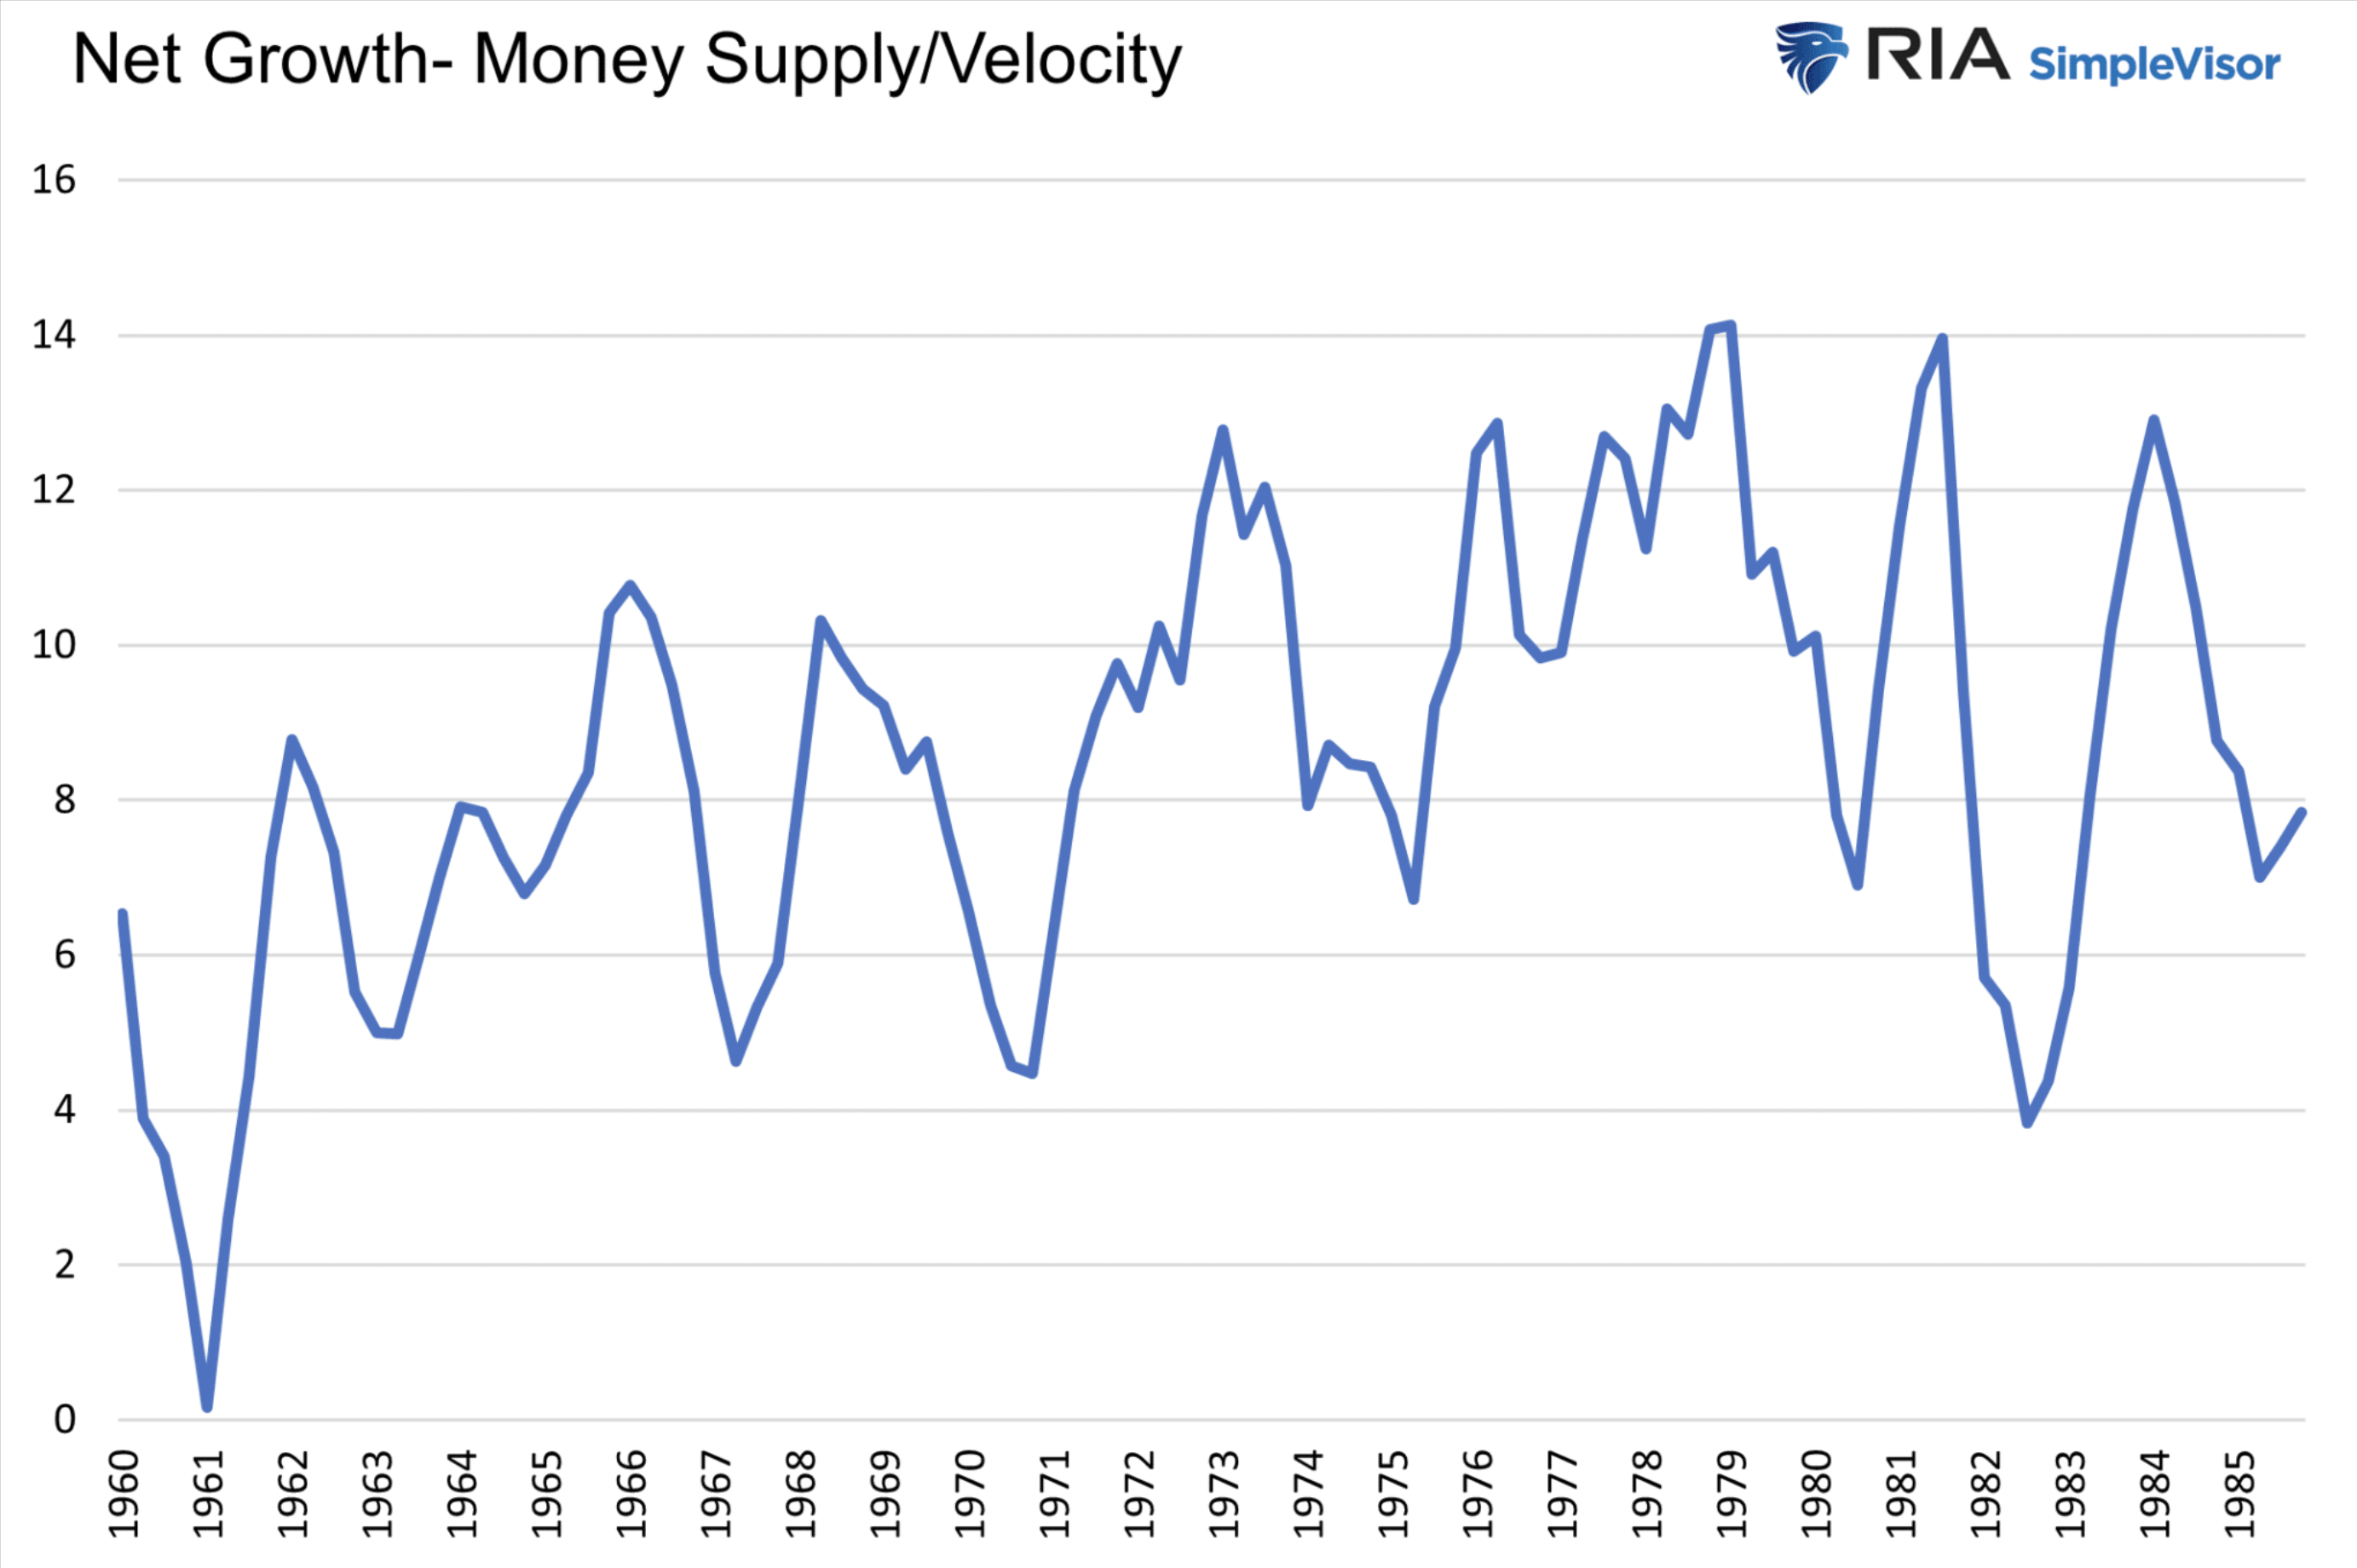 Nettowachstum der Geldmenge und Umlaufgeschwindigkeit